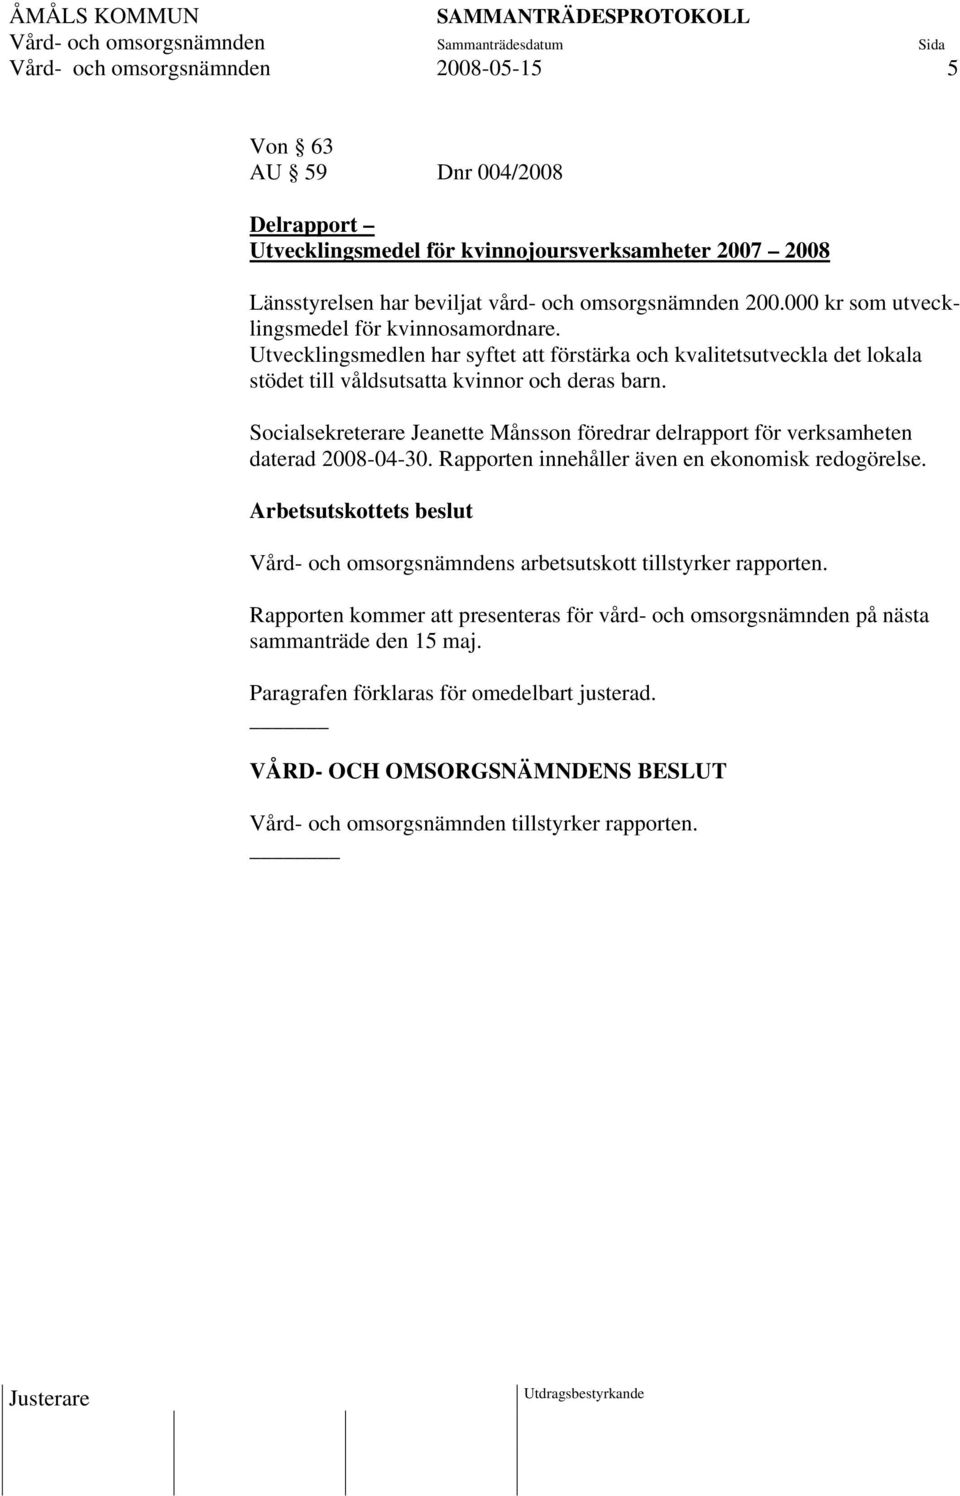 Socialsekreterare Jeanette Månsson föredrar delrapport för verksamheten daterad 2008-04-30. Rapporten innehåller även en ekonomisk redogörelse.